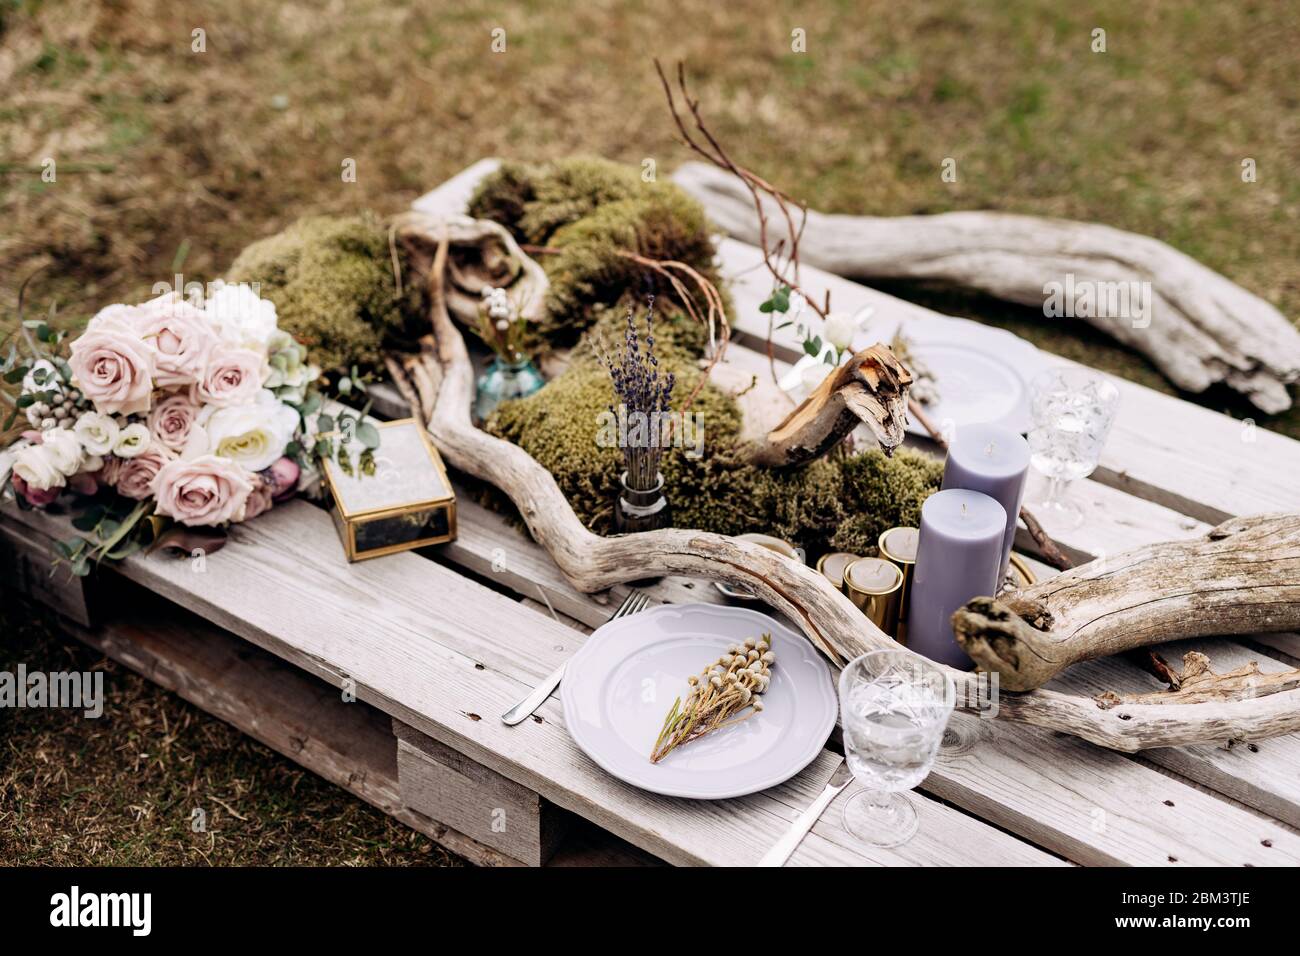 Réception de table de mariage. Une table impromptue pour deux de la palette de construction sur l'herbe grise en Islande. Plaque violet clair, accrocs, mousse Banque D'Images